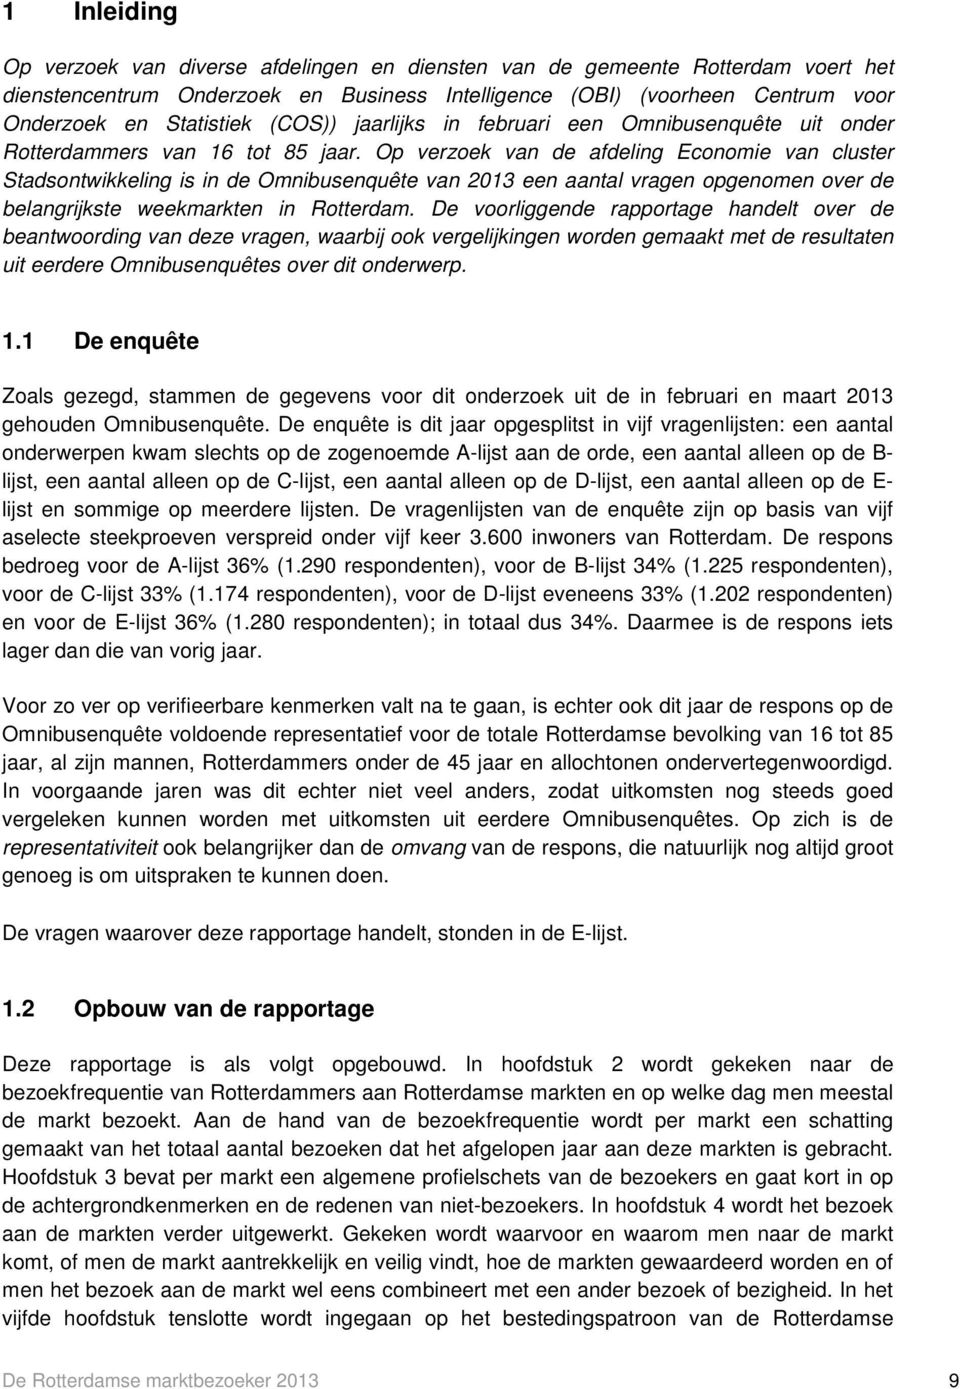 Op verzoek van de afdeling Economie van cluster Stadsontwikkeling is in de Omnibusenquête van 2013 een aantal vragen opgenomen over de belangrijkste weekmarkten in Rotterdam.